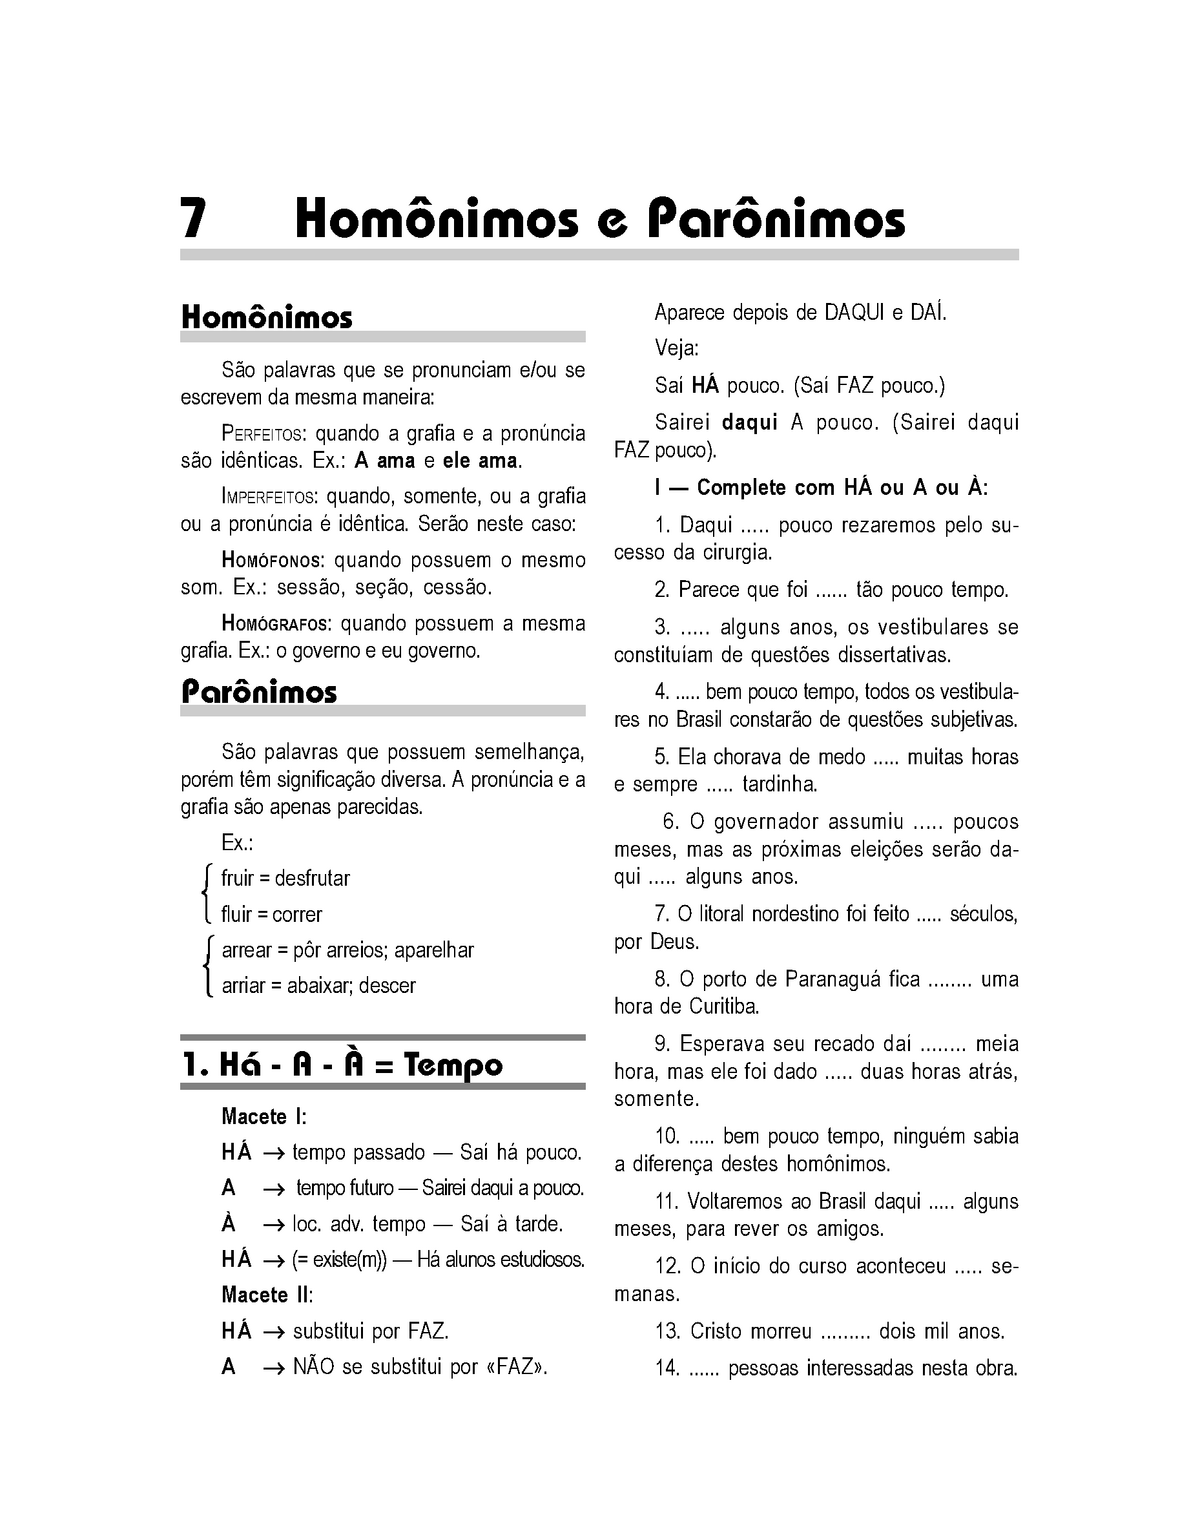 MAPA 019 - Português - CASOS DE PARÔNIMOS-HOMÔNIMOS - XEQUE x